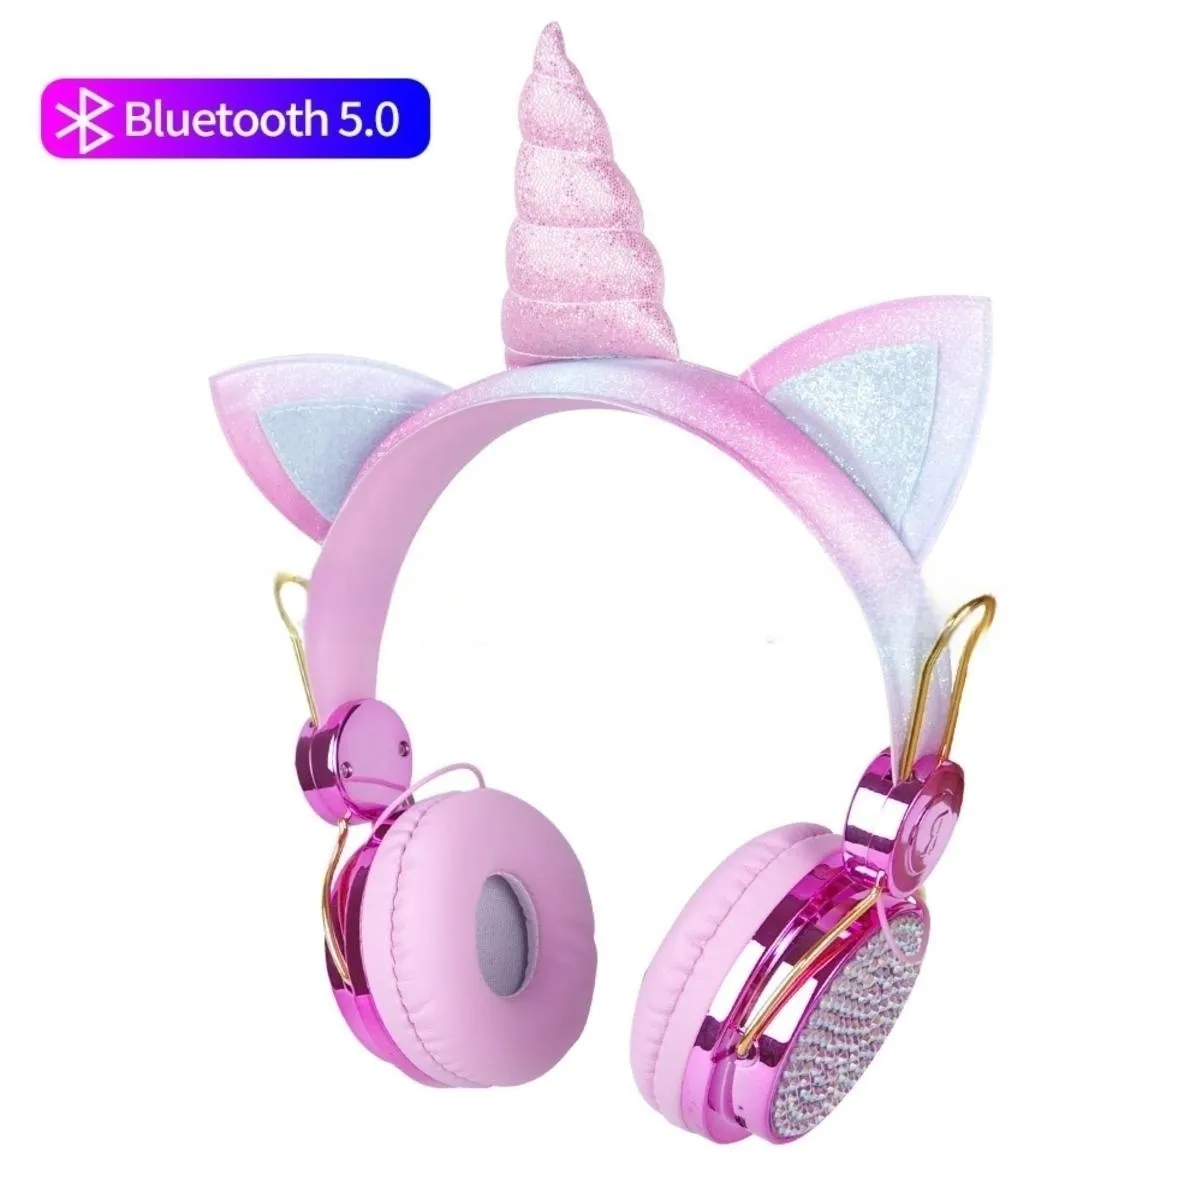 Kopf tragende süße Cartoon Unicorn Bluetooth drahtlose Headset-Kopfhörer mit diamant besetzten glänzenden Aufklebern für Kinder